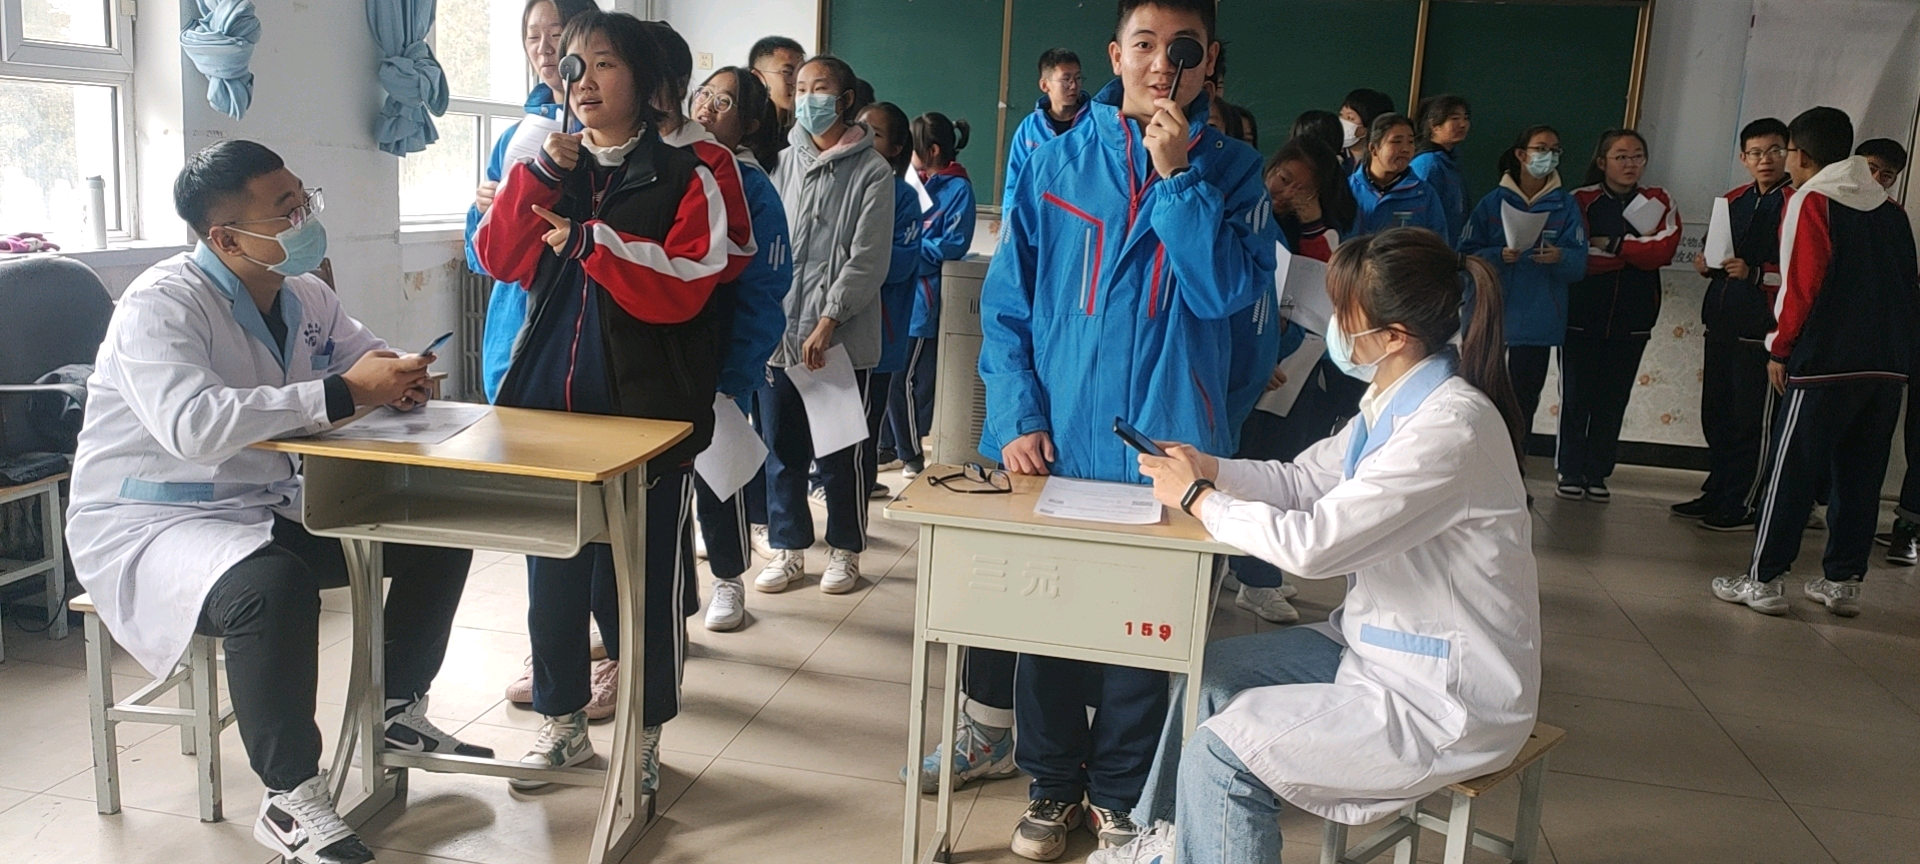 内蒙古教育厅 彩虹行动 学生近视防控专项计划正在进行中